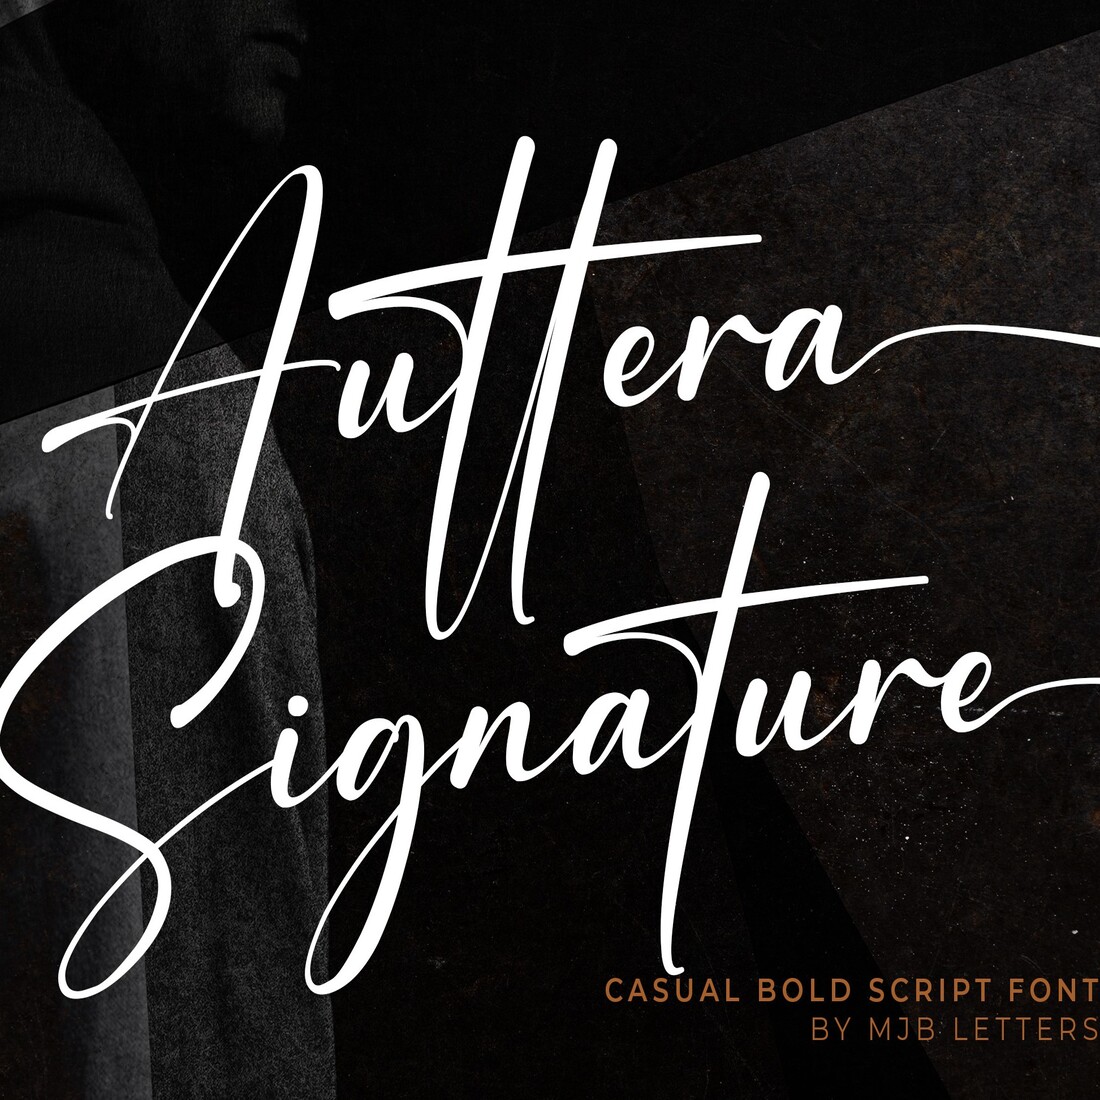 Font Auttera Signature cover image.